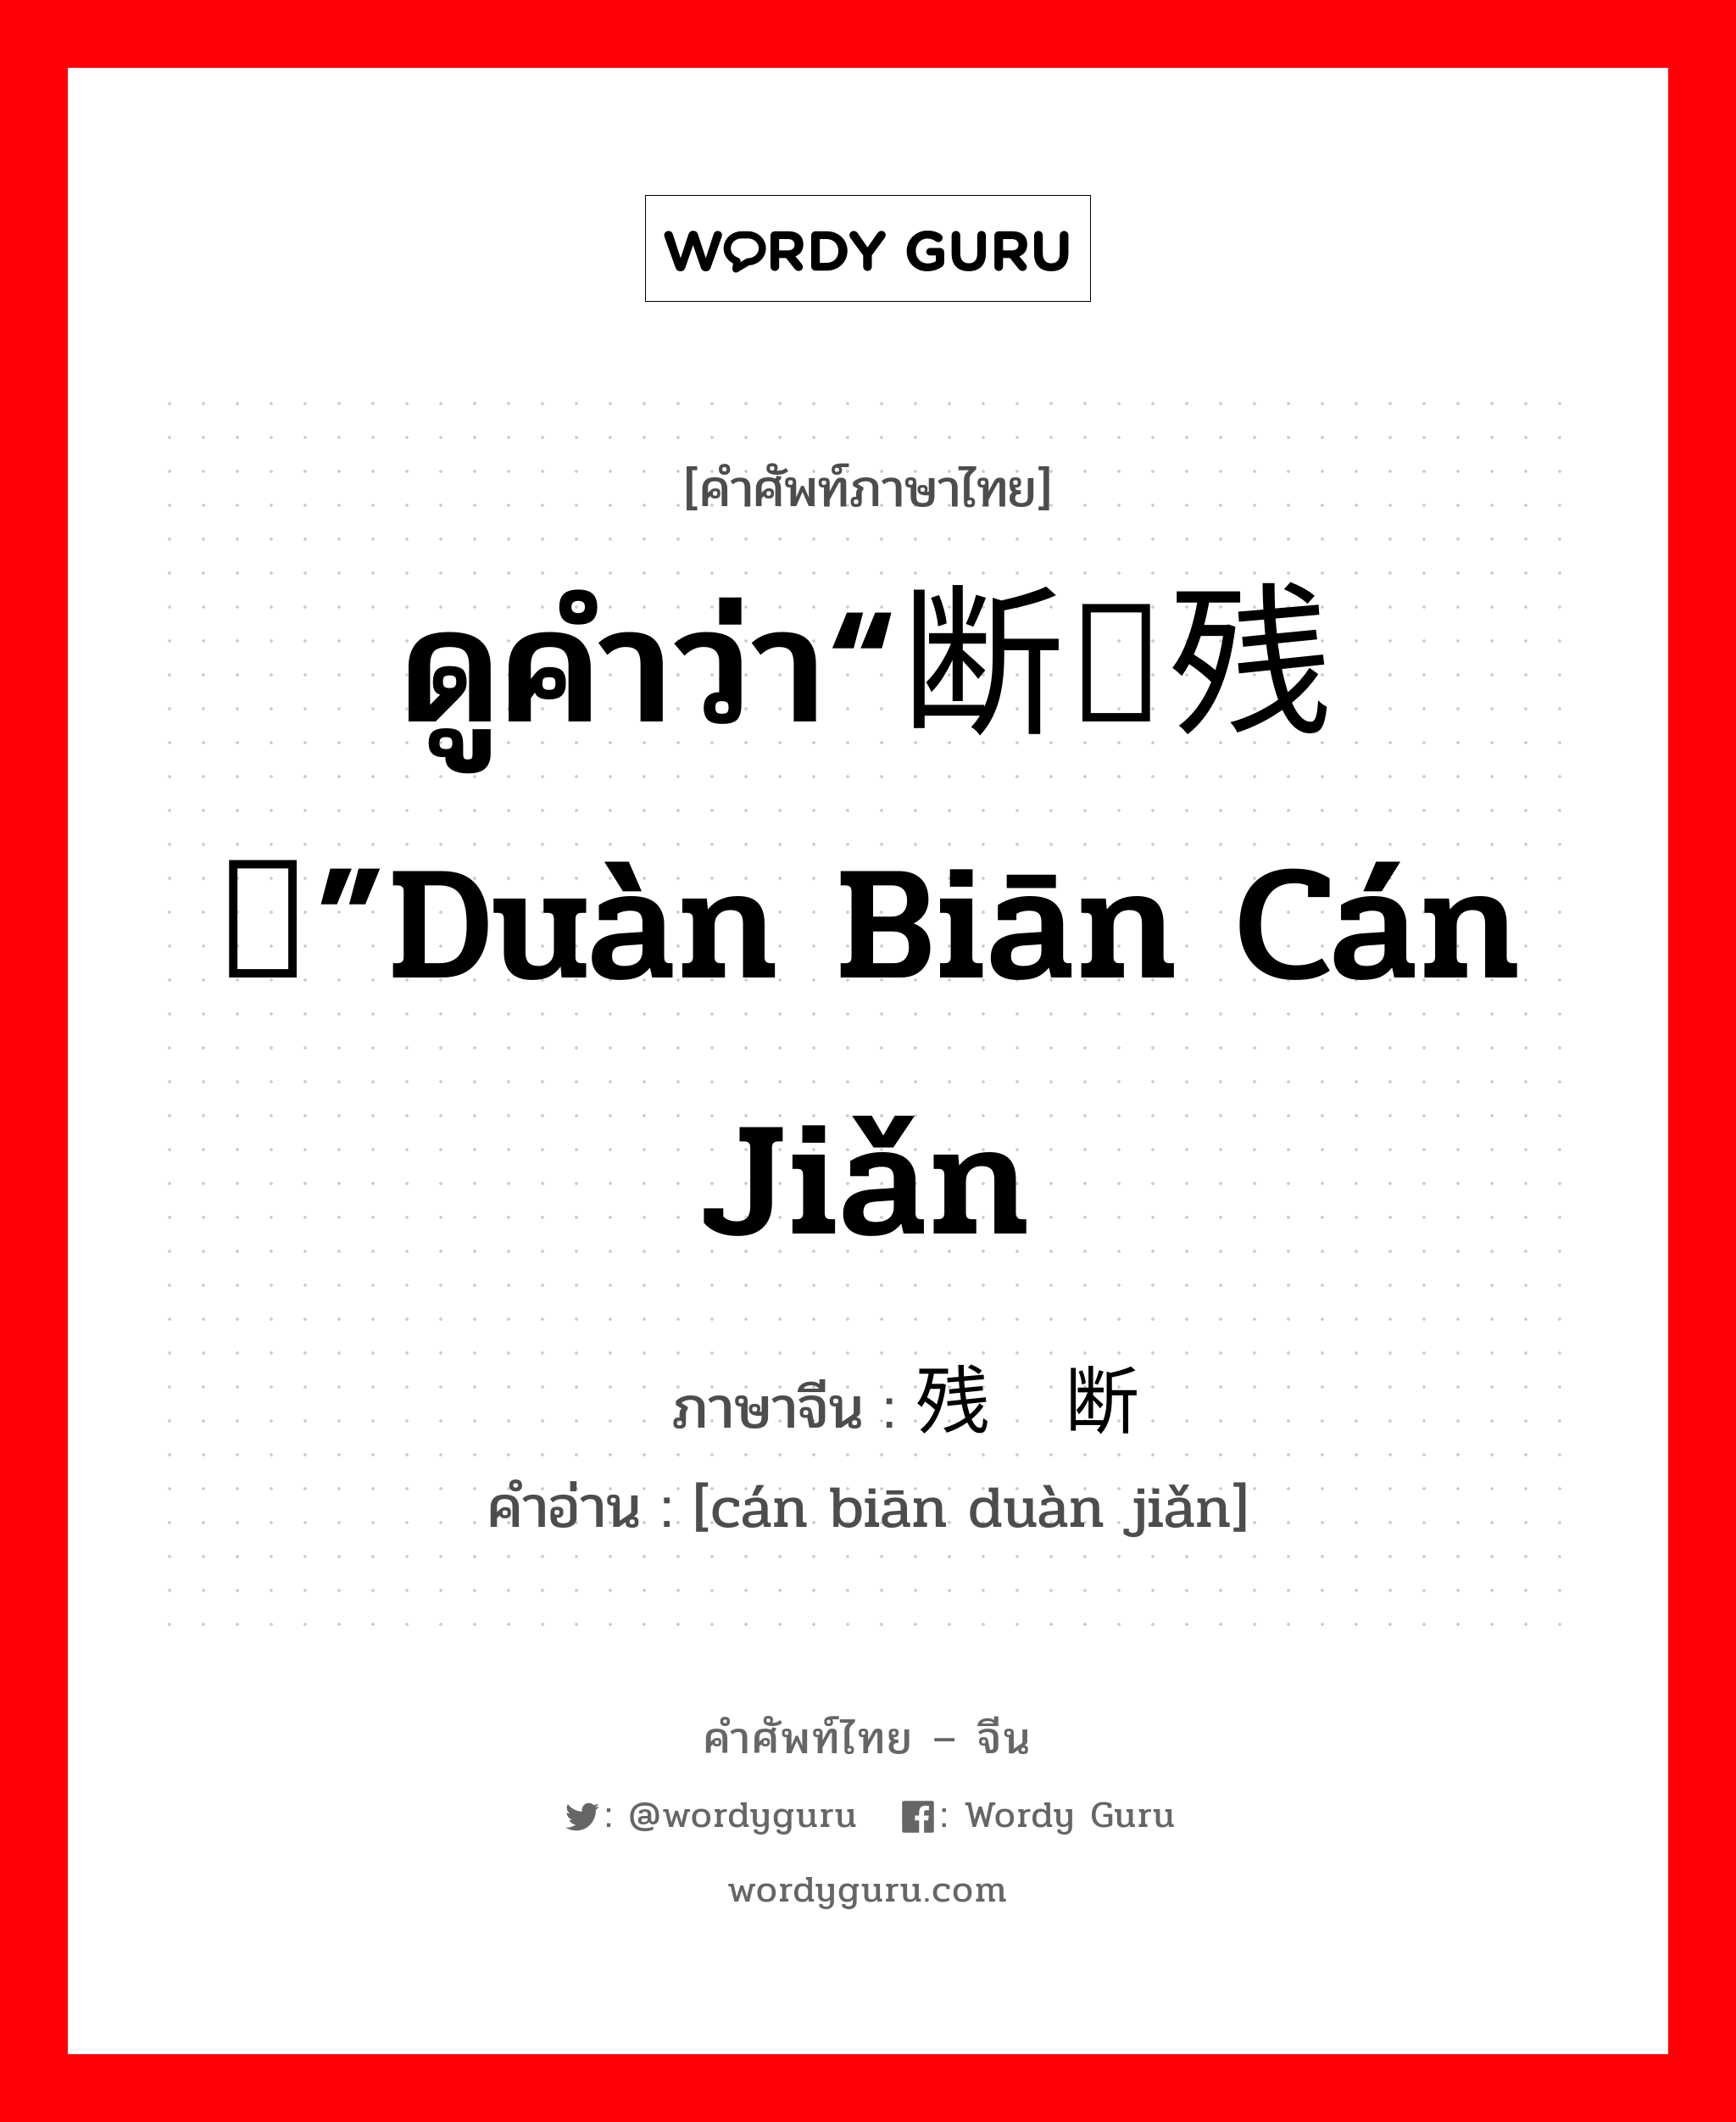 ดูคำว่า“断编残简”duàn biān cán jiǎn ภาษาจีนคืออะไร, คำศัพท์ภาษาไทย - จีน ดูคำว่า“断编残简”duàn biān cán jiǎn ภาษาจีน 残编断简 คำอ่าน [cán biān duàn jiǎn]